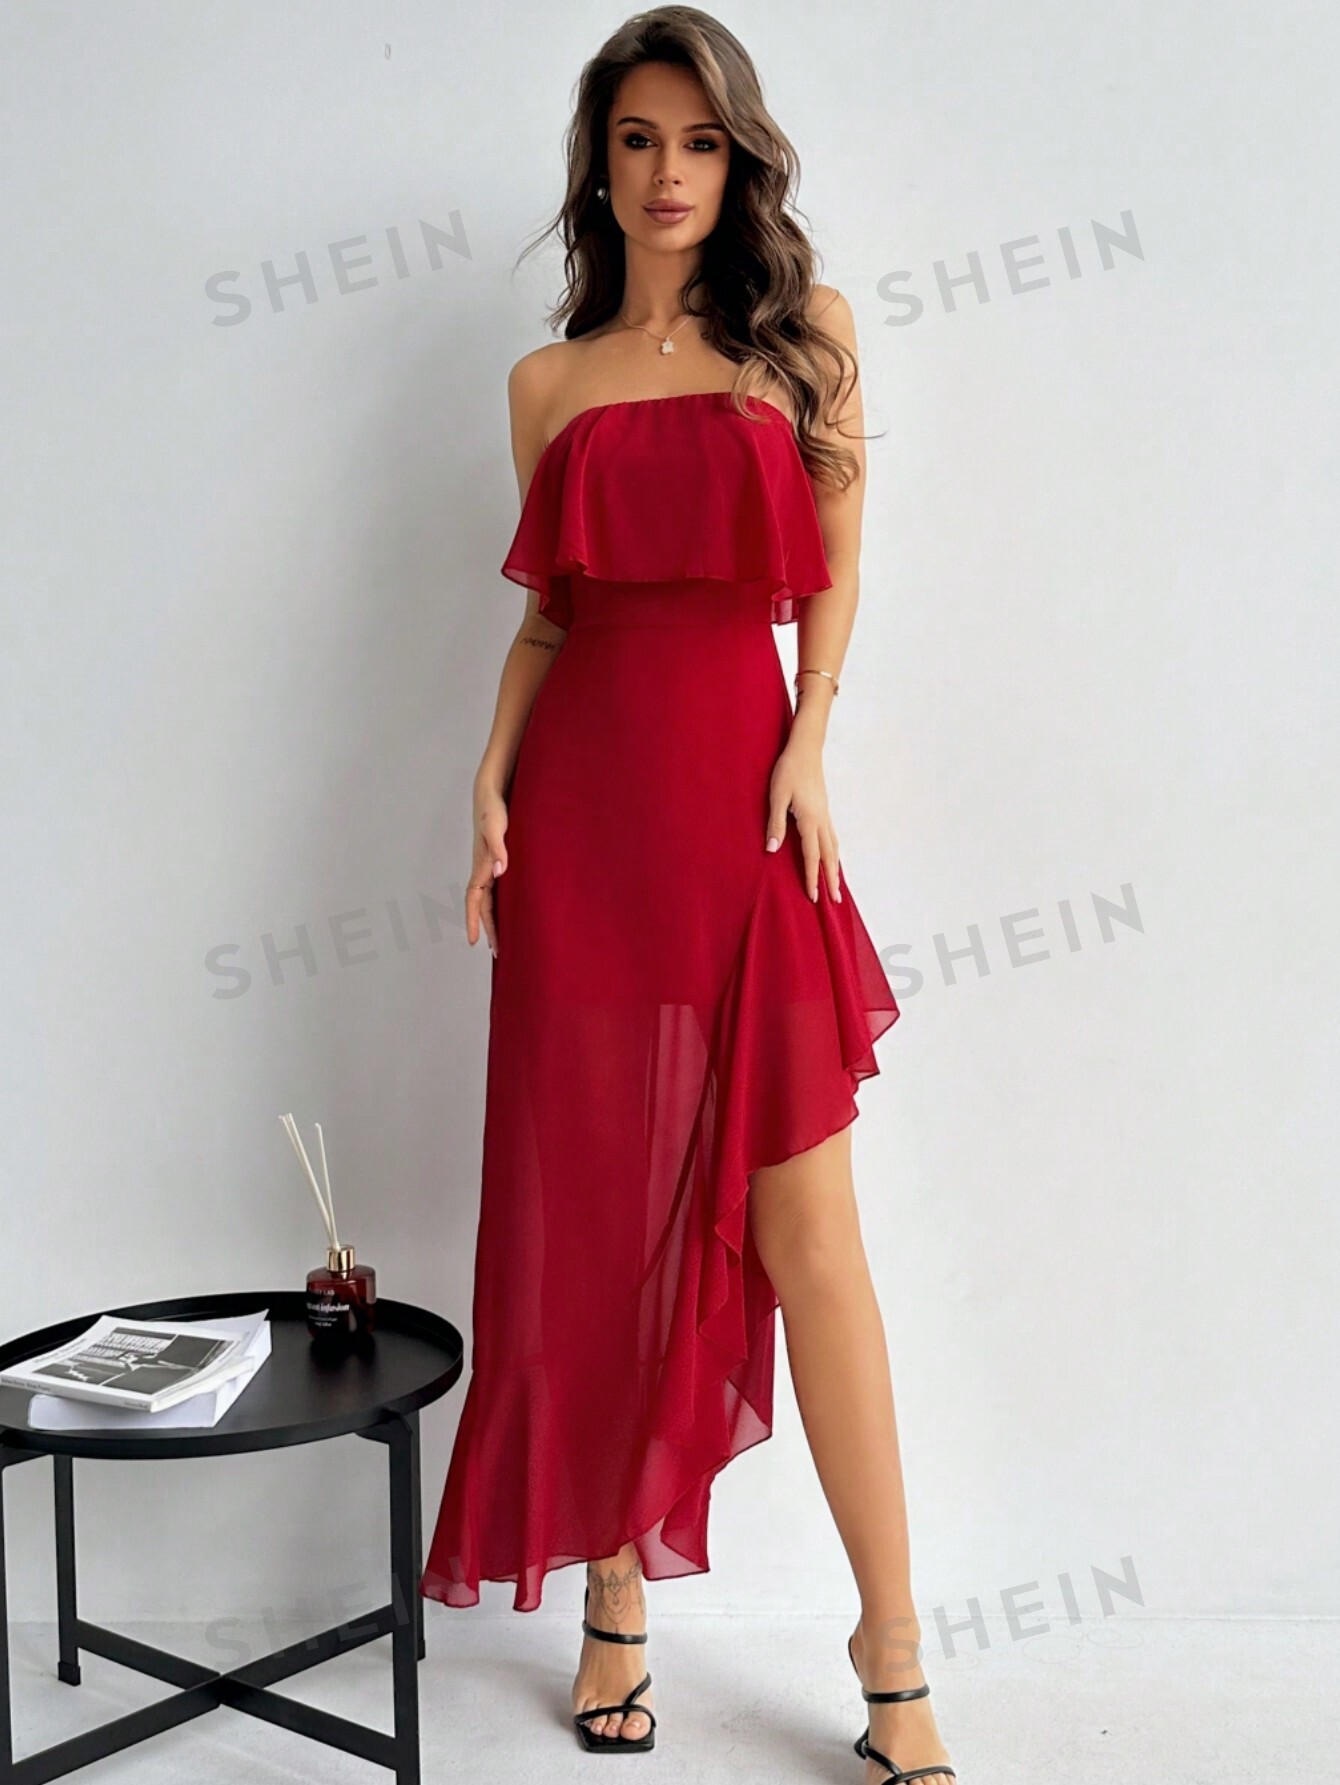 SHEIN Privé женское платье макси без бретелек с высоким разрезом и оборками на подоле для сезона свиданий или свадьбы, красный